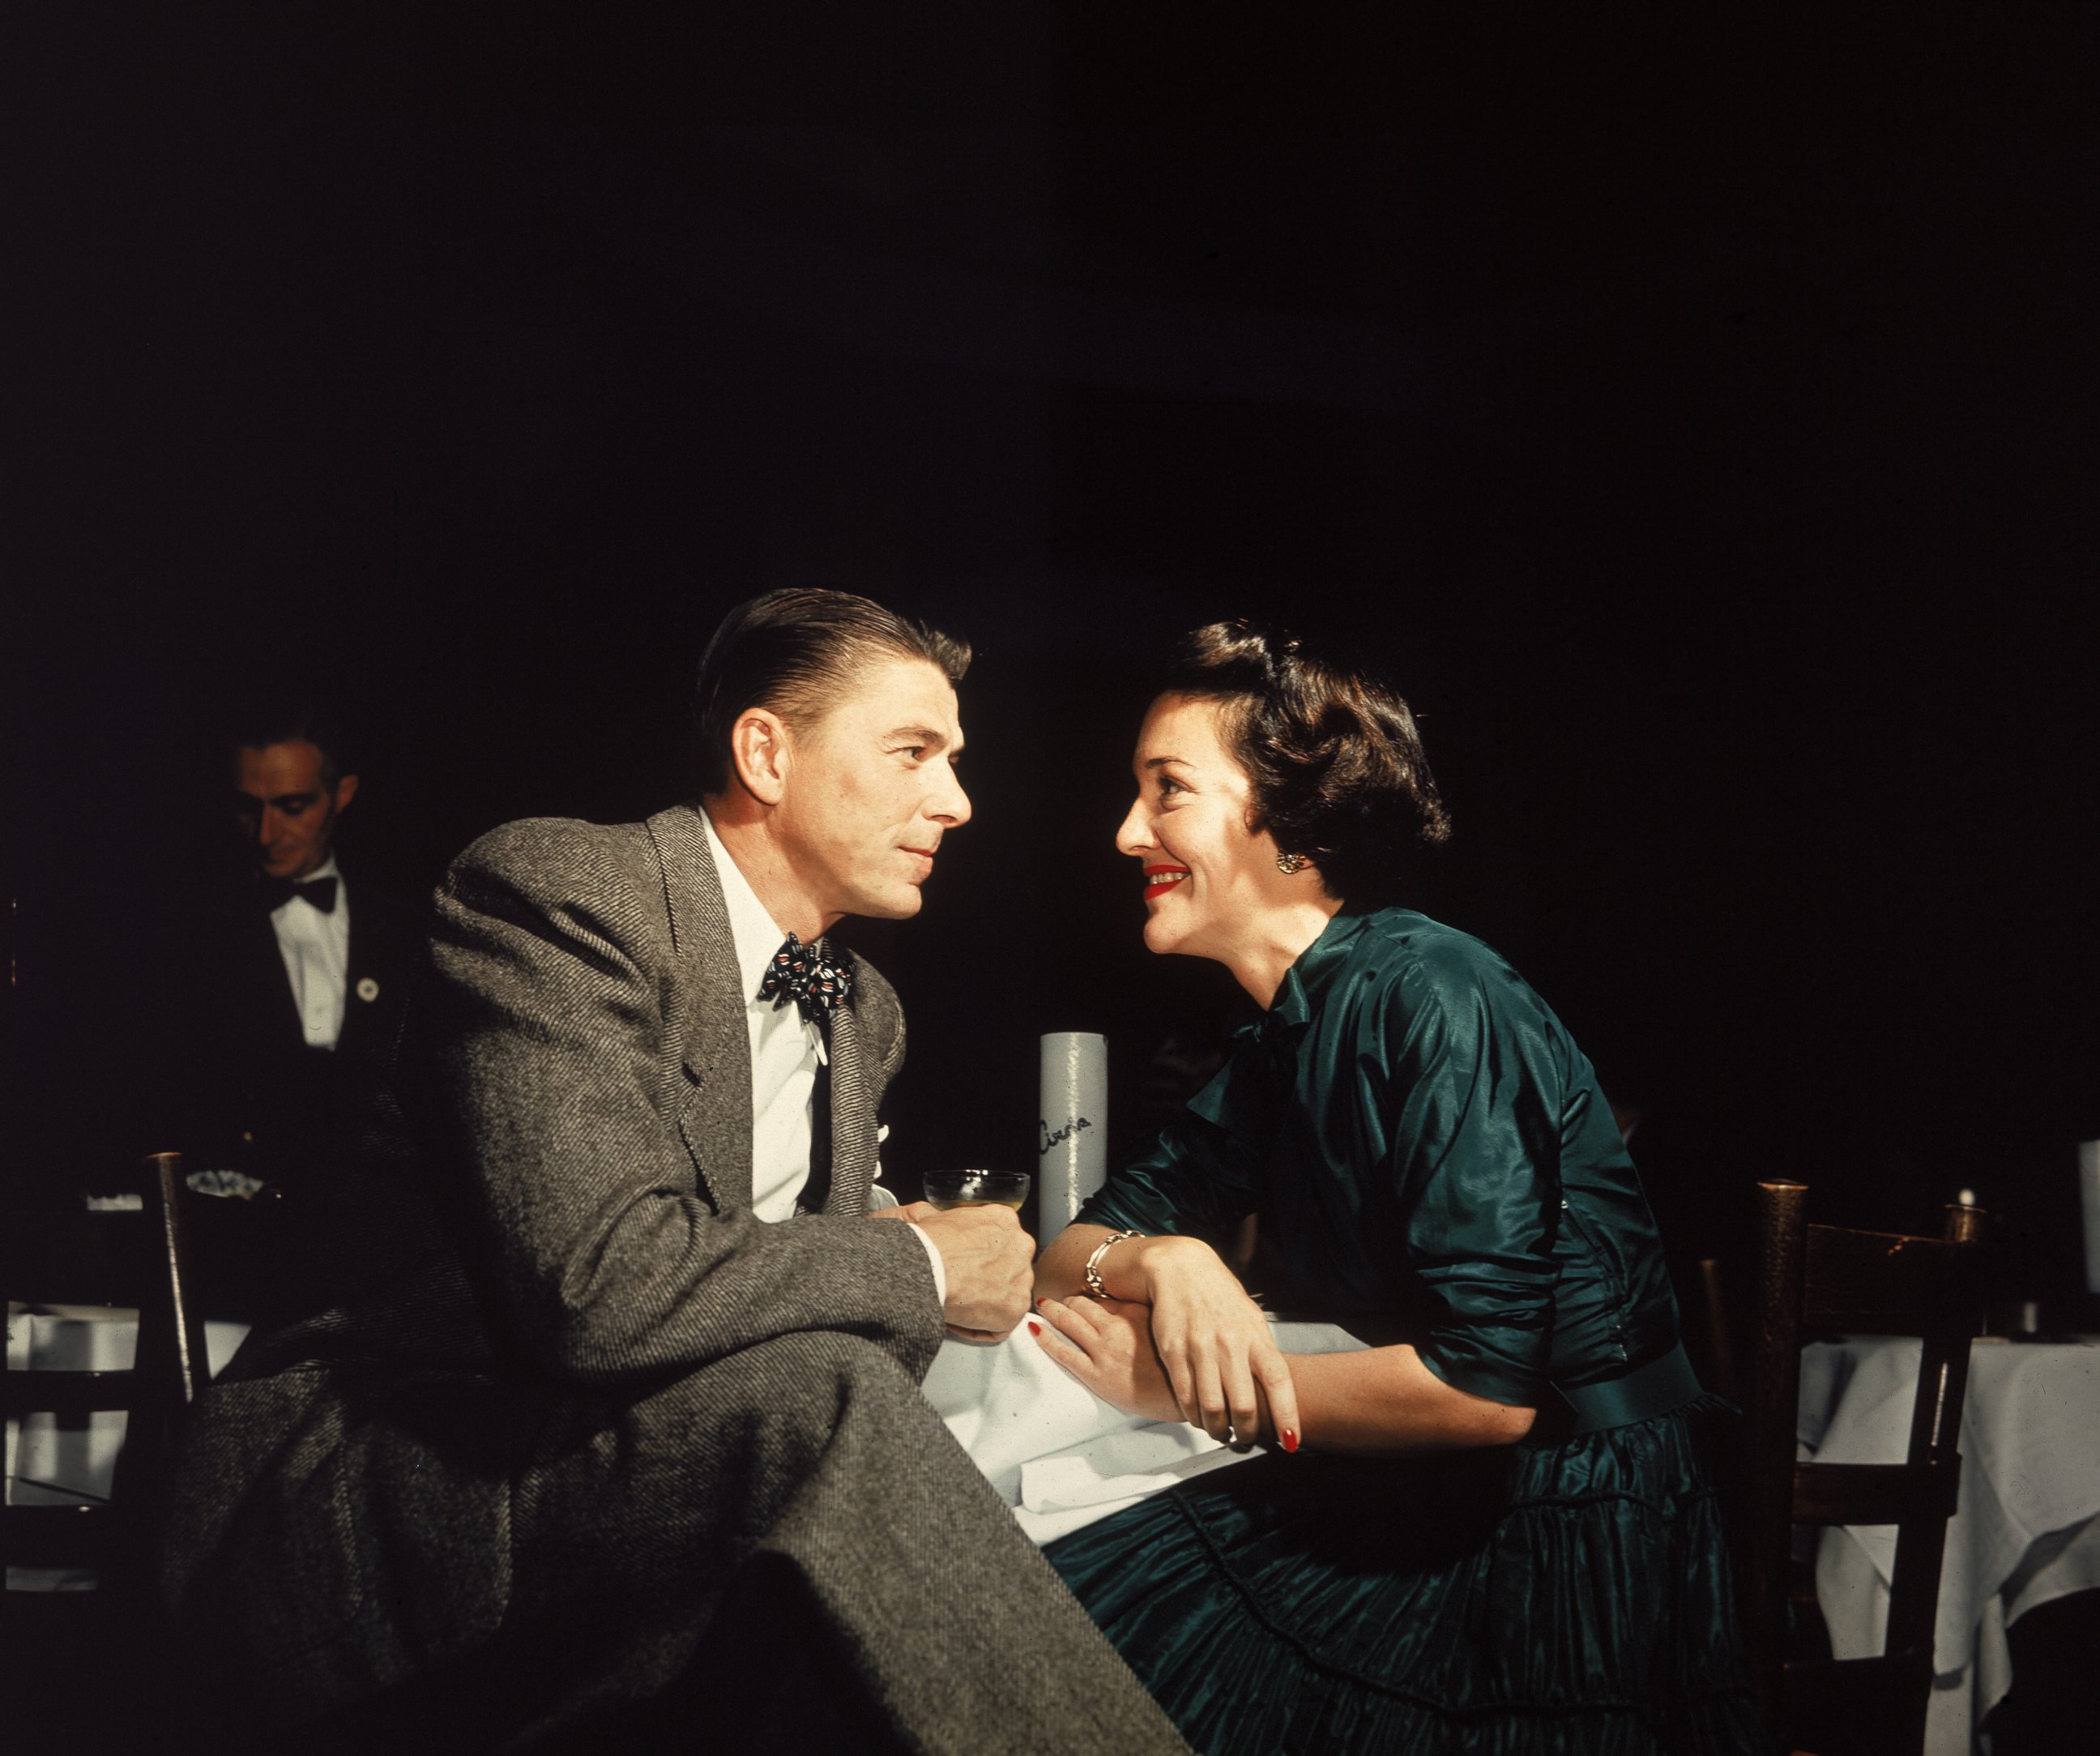 PHOTO:Ronald Reagan and Nancy Reagan gaze at one another across a table, circa 1952. 